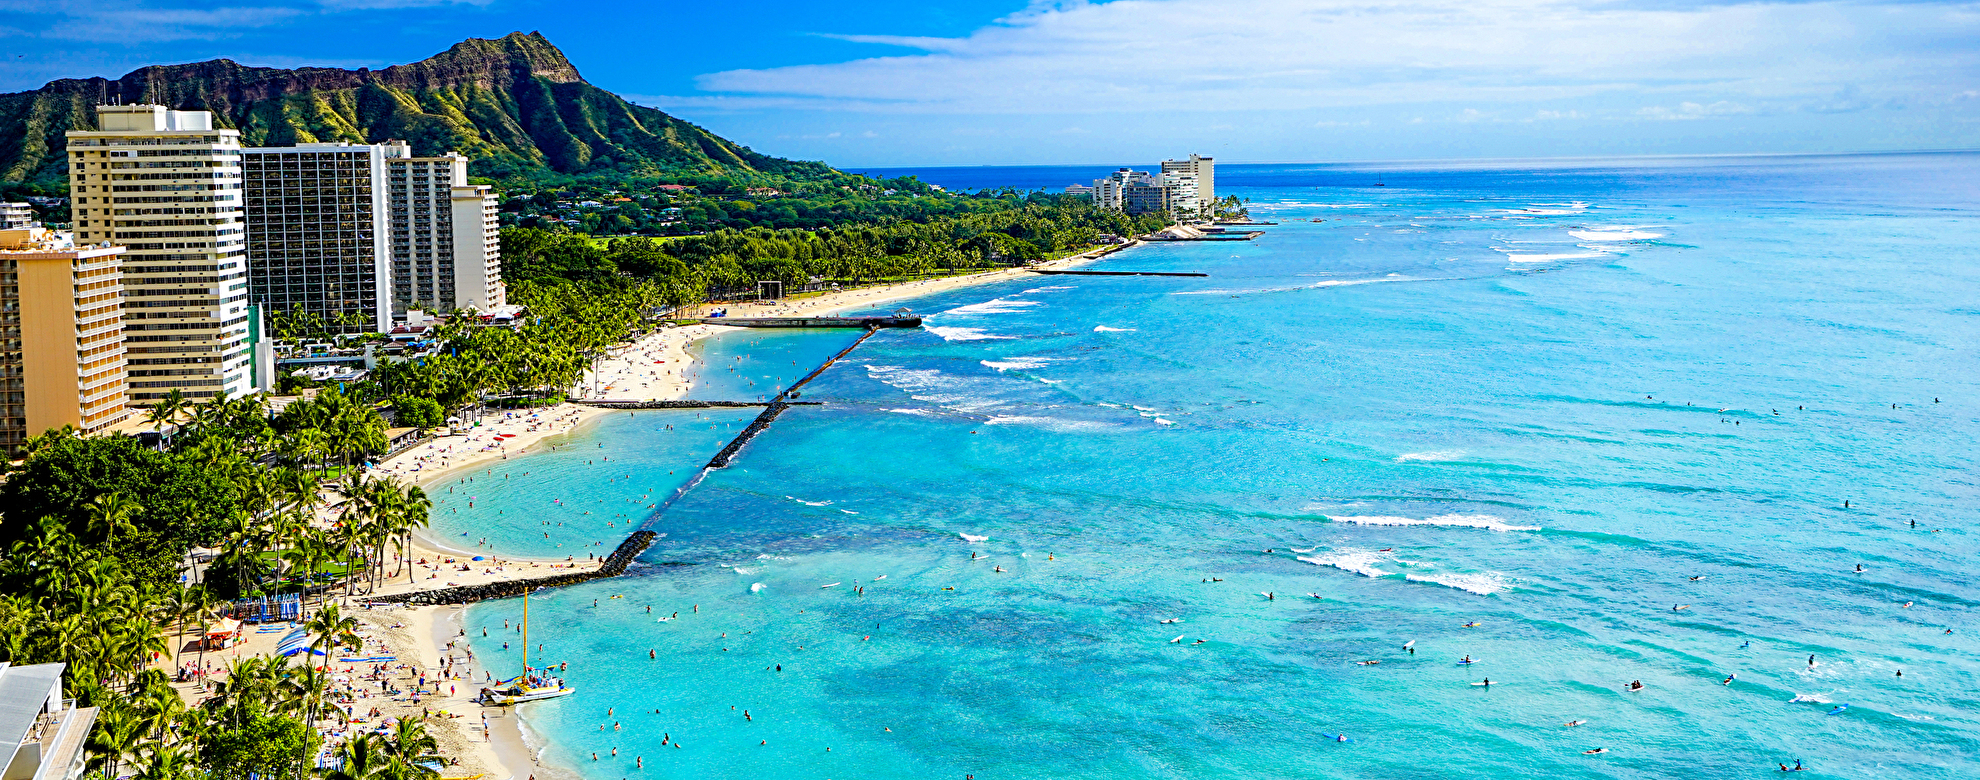 ハワイできれいなビーチおすすめ13選 人気・穴場の海や楽しみ方も紹介